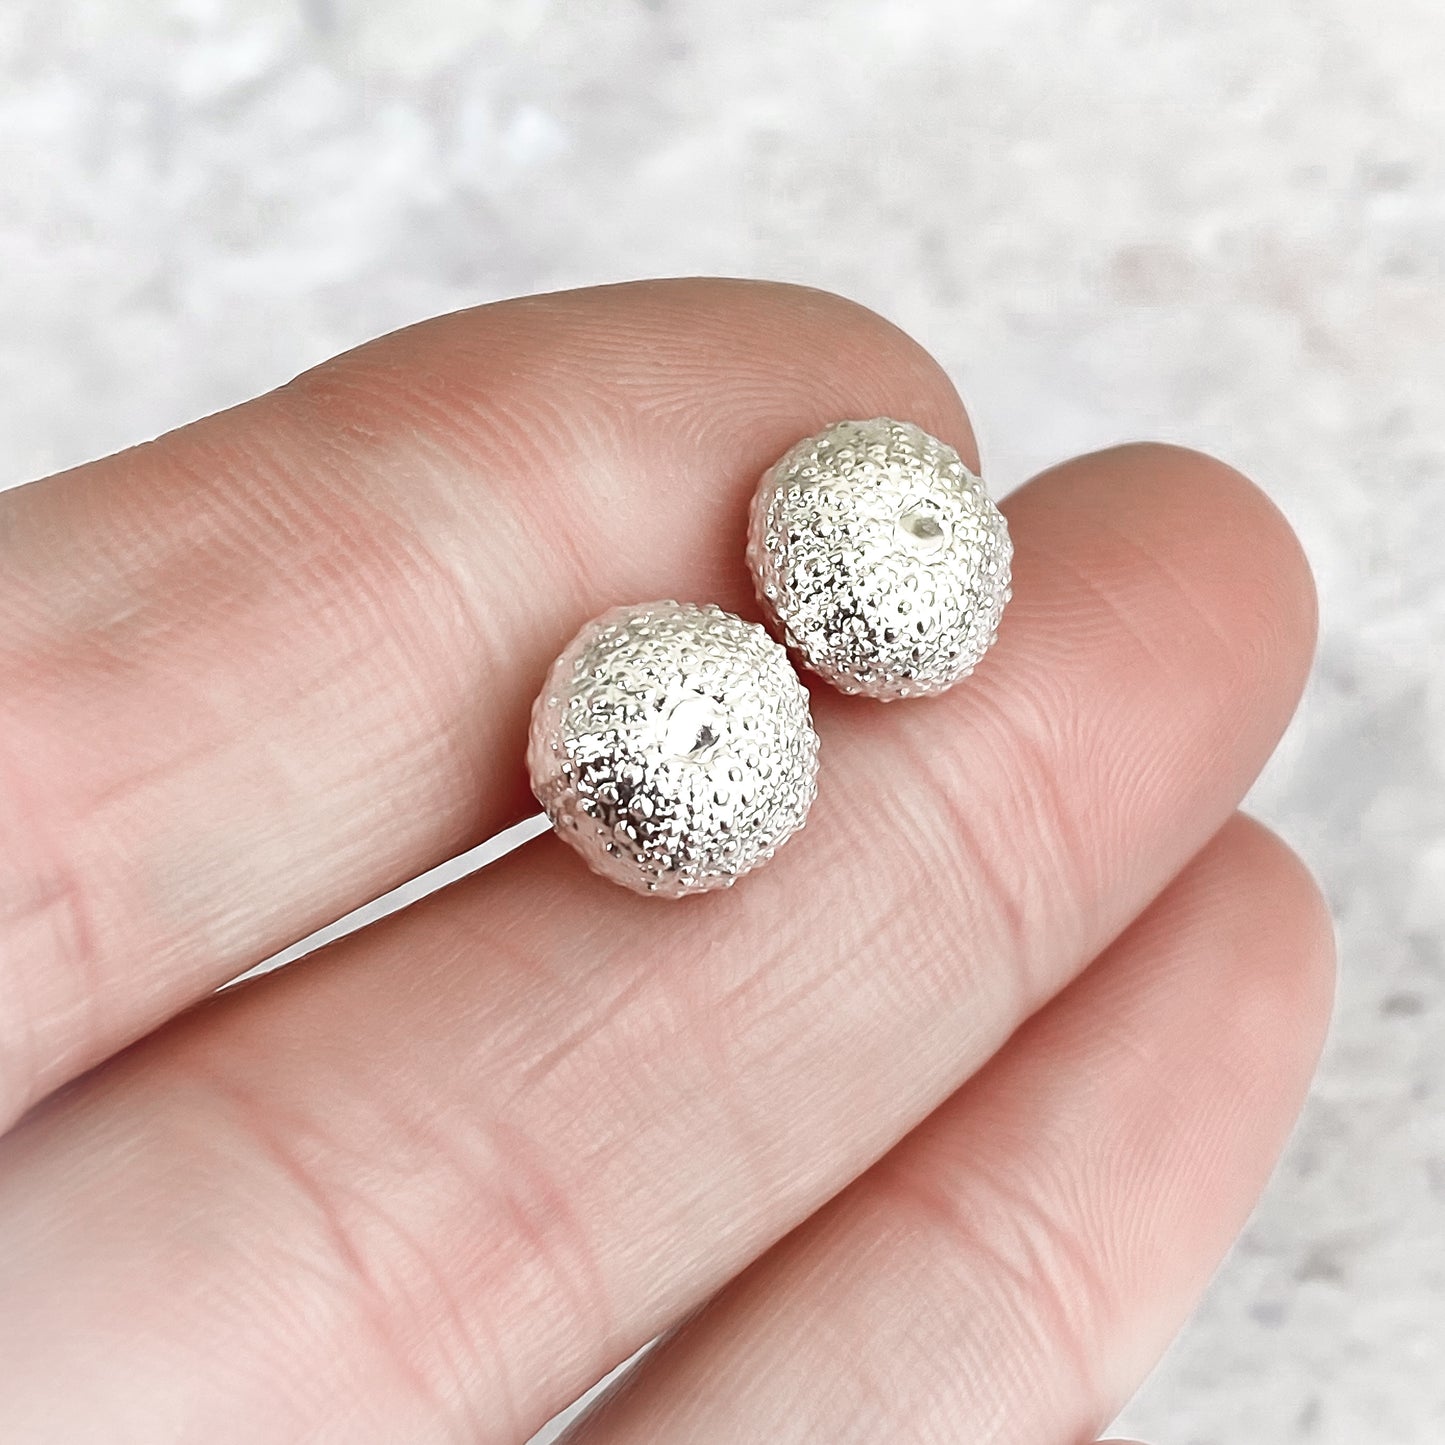 Silver Sea Urchin Stud Earrings